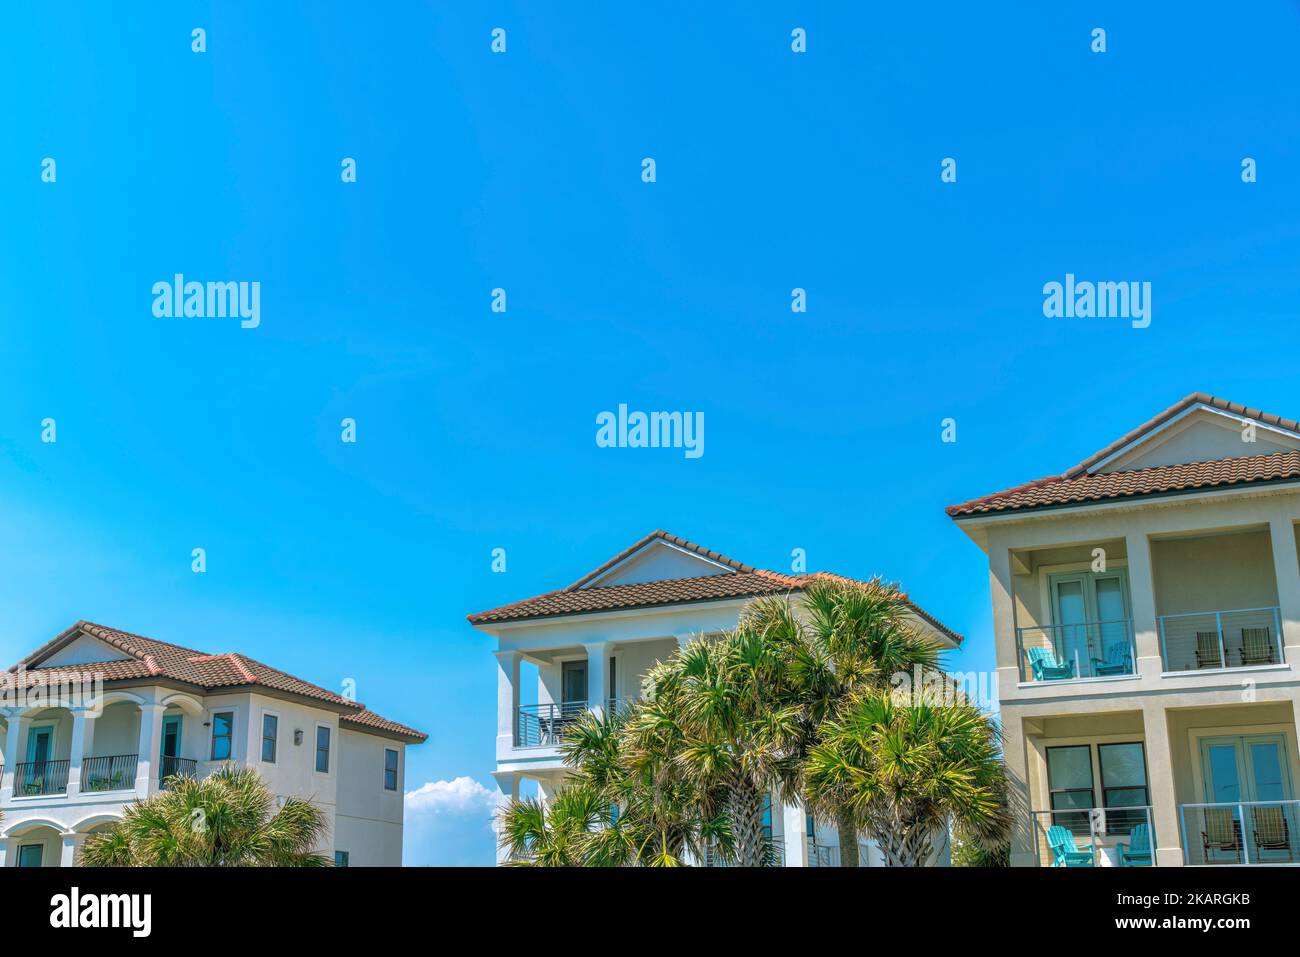 Destin, Florida- Strandhäuser mit Palmen auf der Vorderseite des Balkonen mit Sesseln. Große Strandhäuser mit Balkonen am blauen Himmel Stockfoto